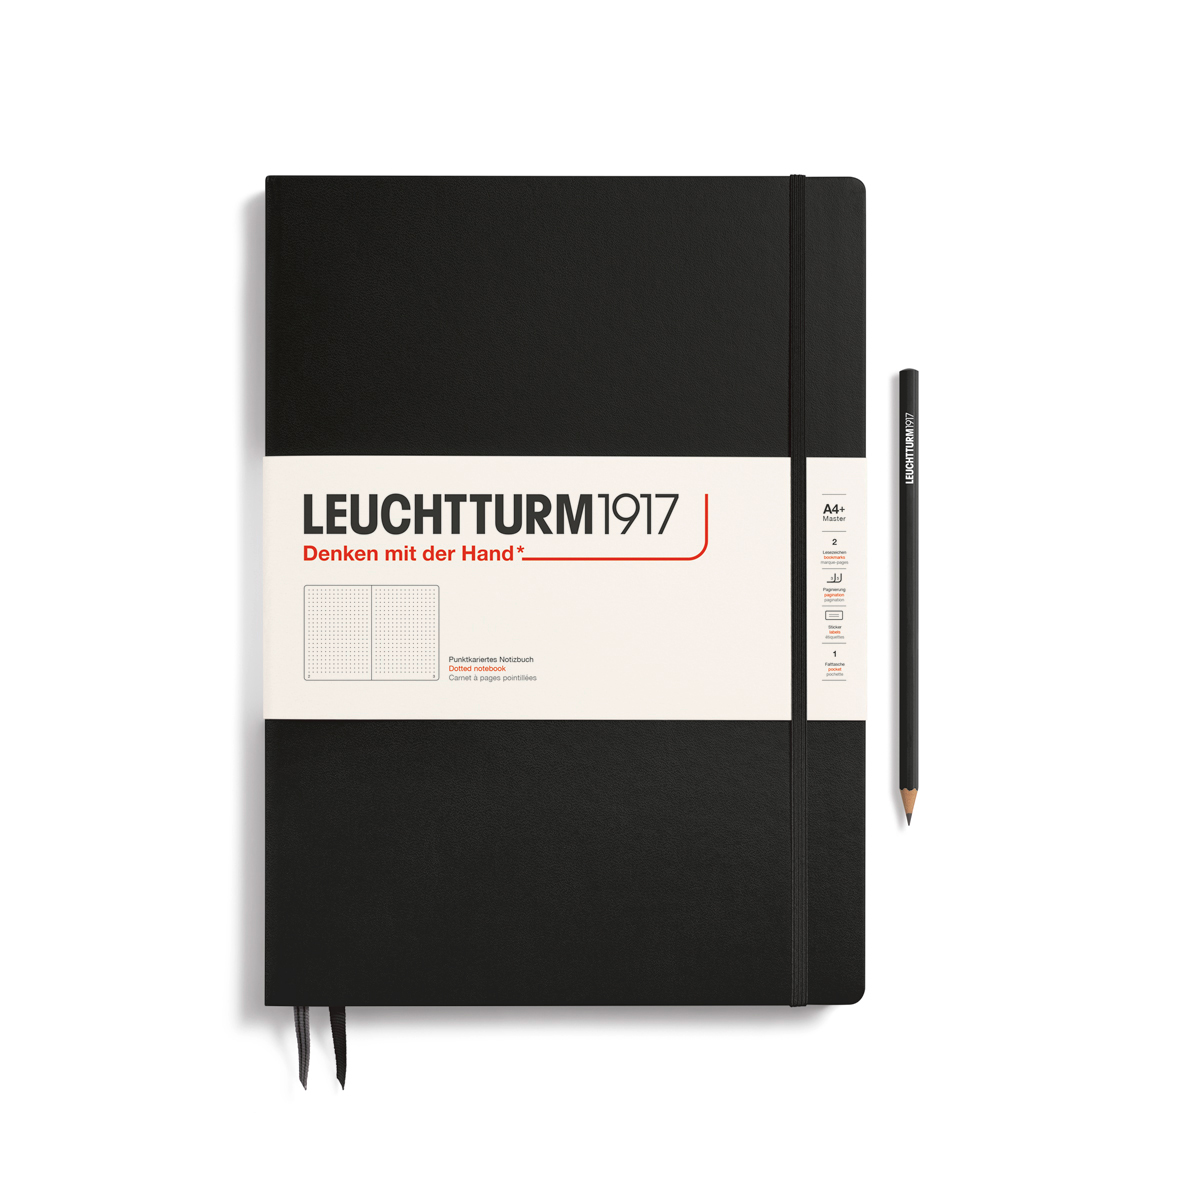 Записная книжка в точку Leuchtturm Master Slim А4+ 123 стр., твердая обложка черная pop up энциклопедия хищники книжка панорамка